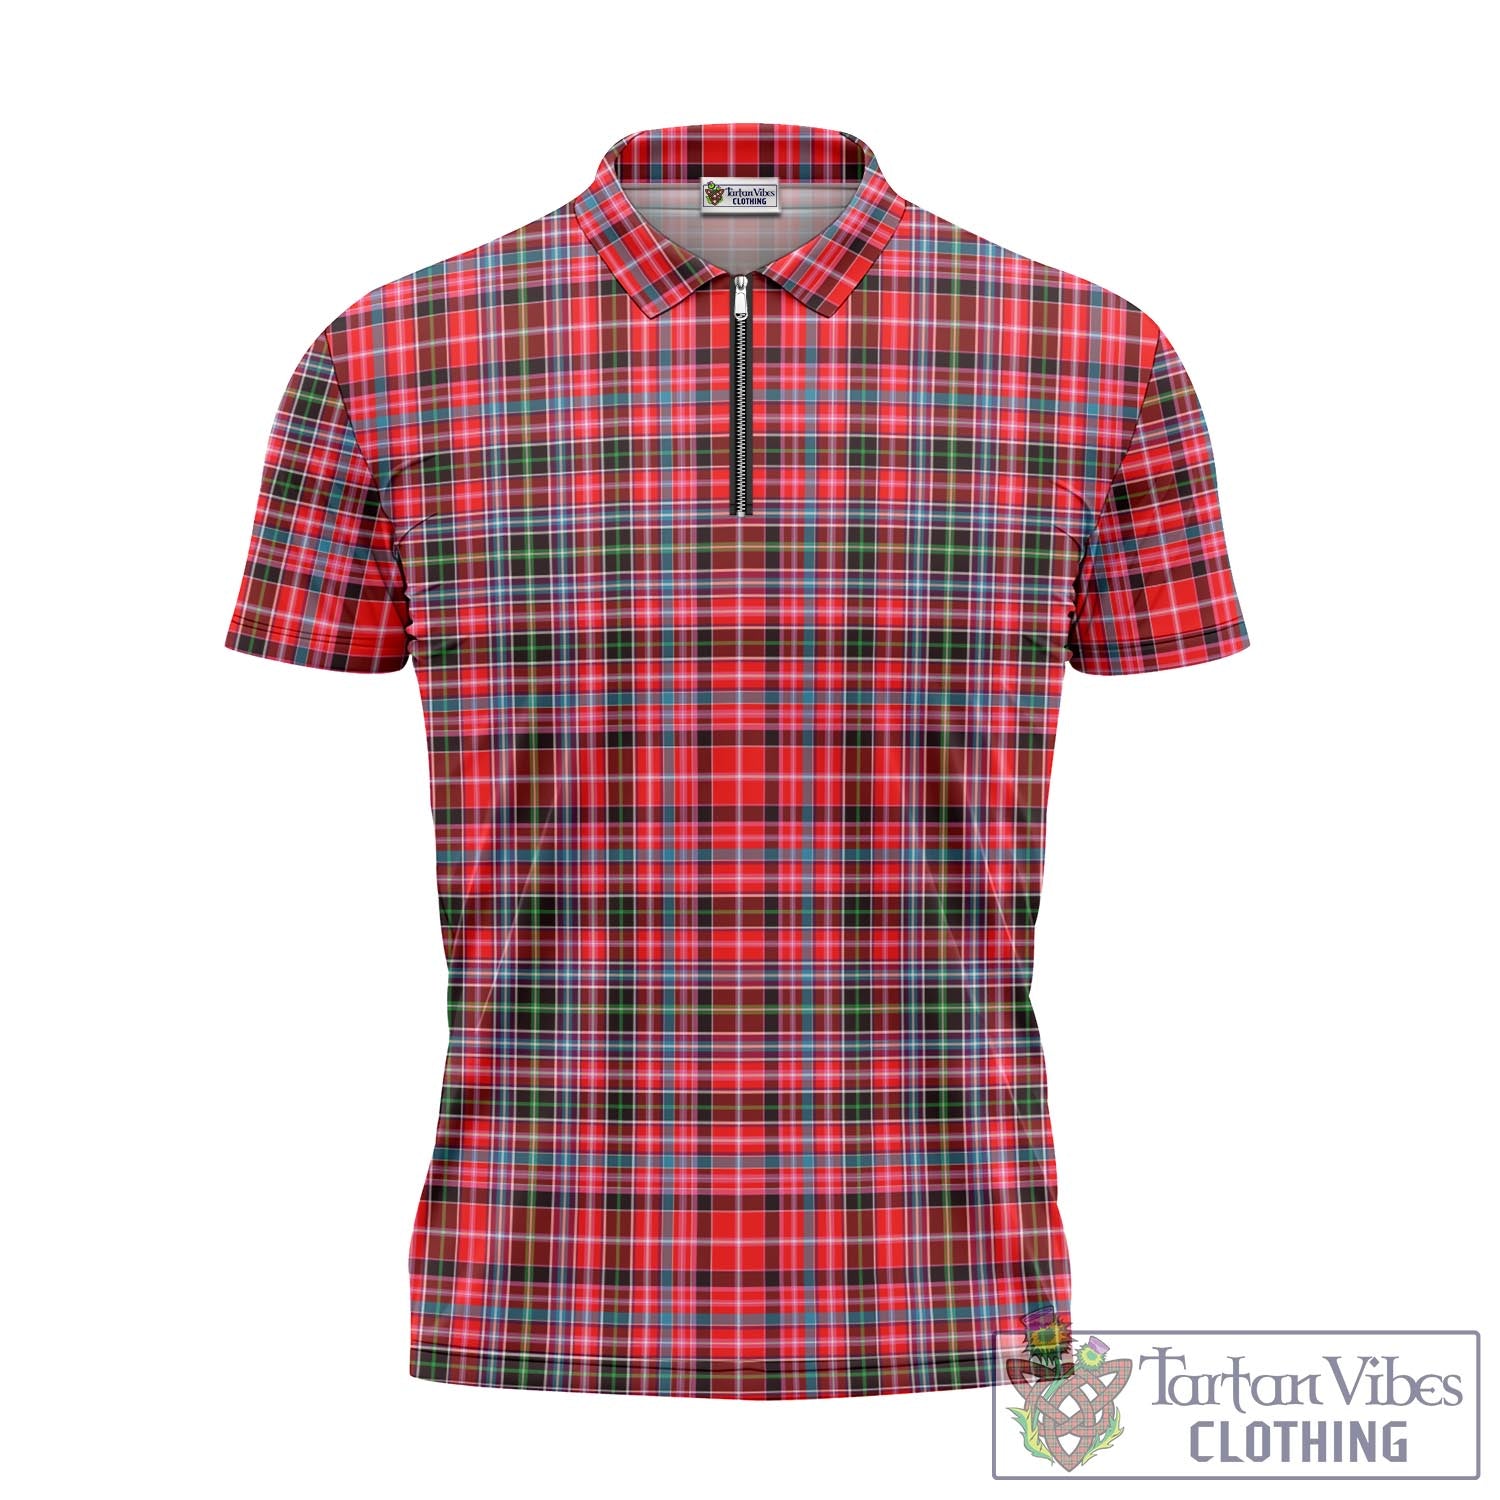 Tartan Vibes Clothing Aberdeen District Tartan Zipper Polo Shirt